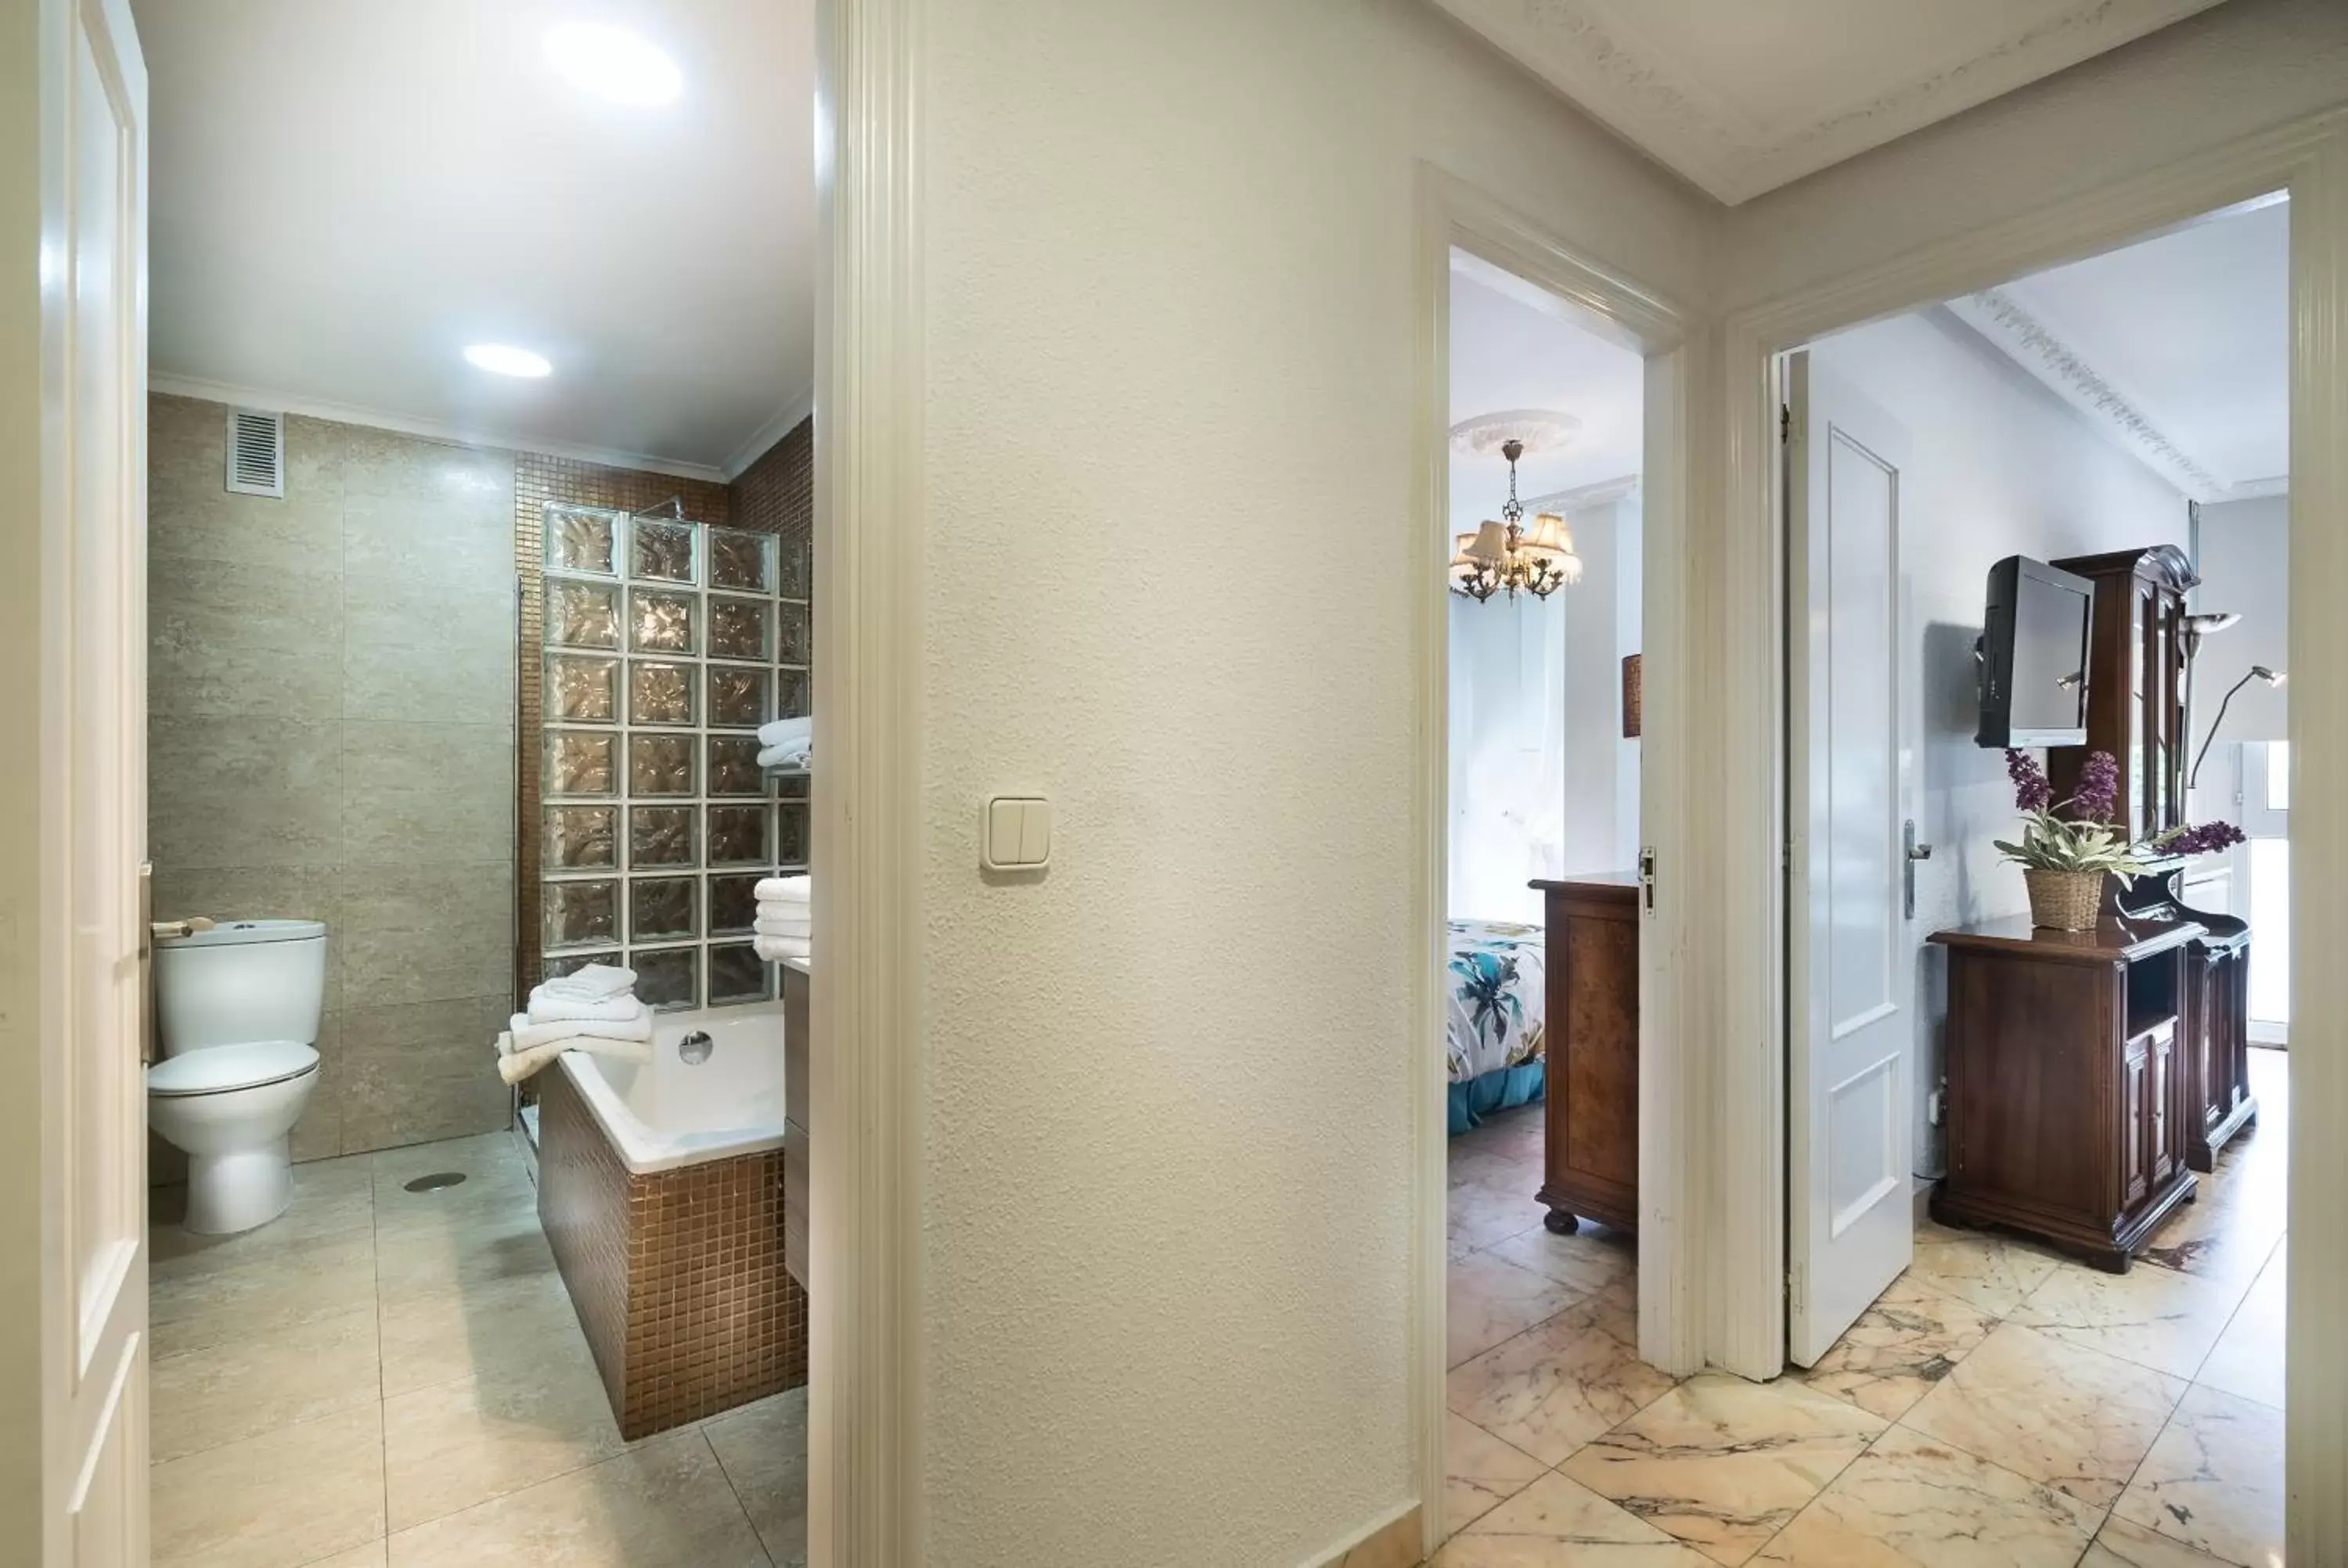 Photo of the whole room, Bathroom in Apartamentos Las Brisas